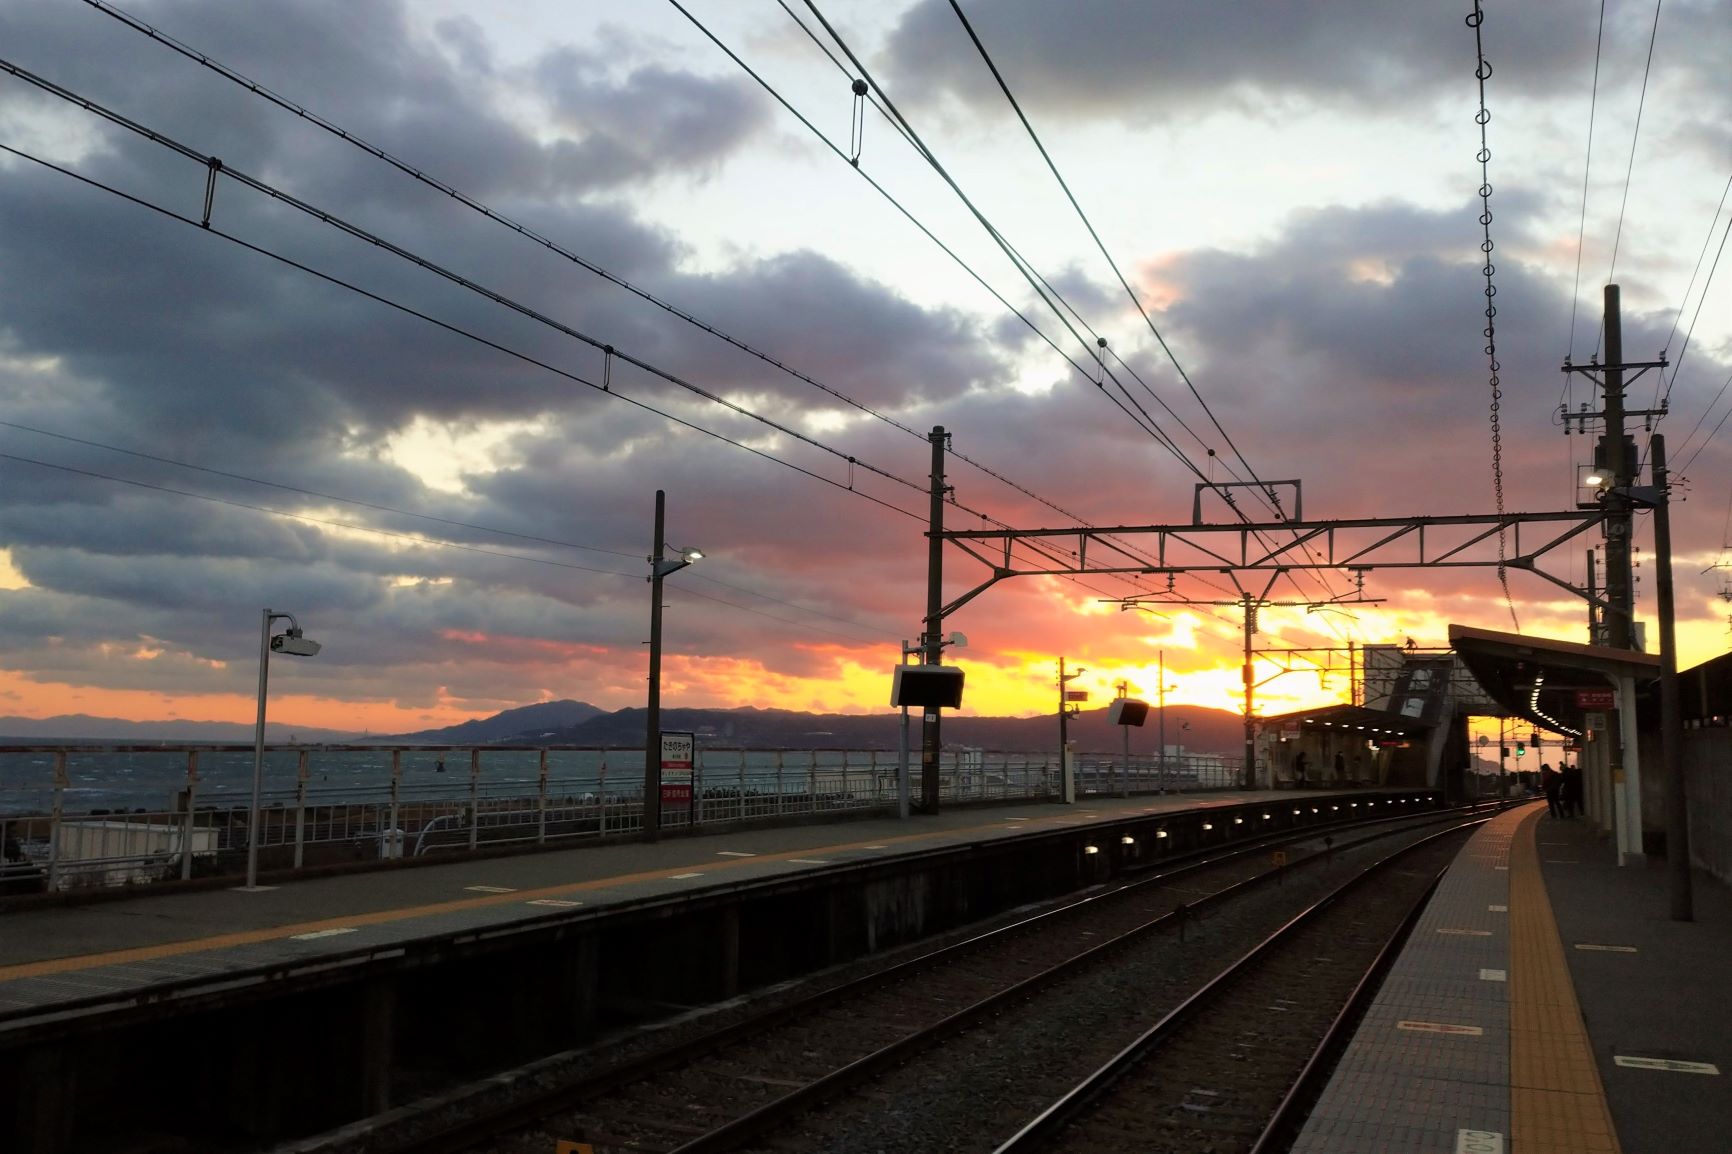 神戸一の絶景を眺められる駅「滝の茶屋」 | 地域のトピックス